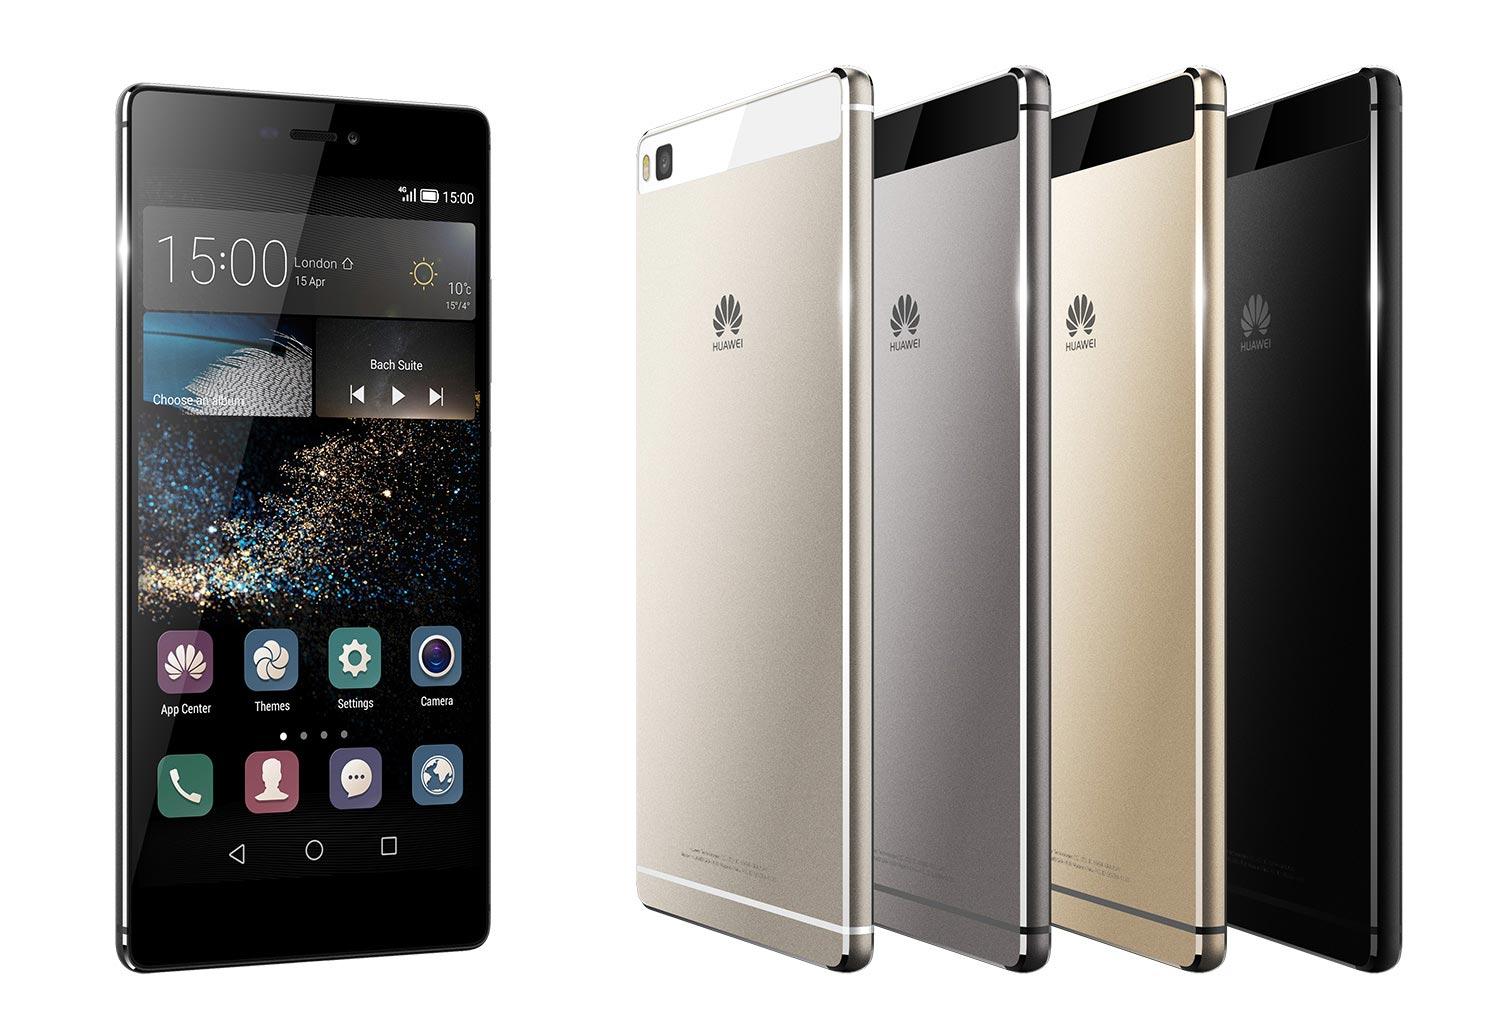 ¿Te interesa comprar el Huawei P8?